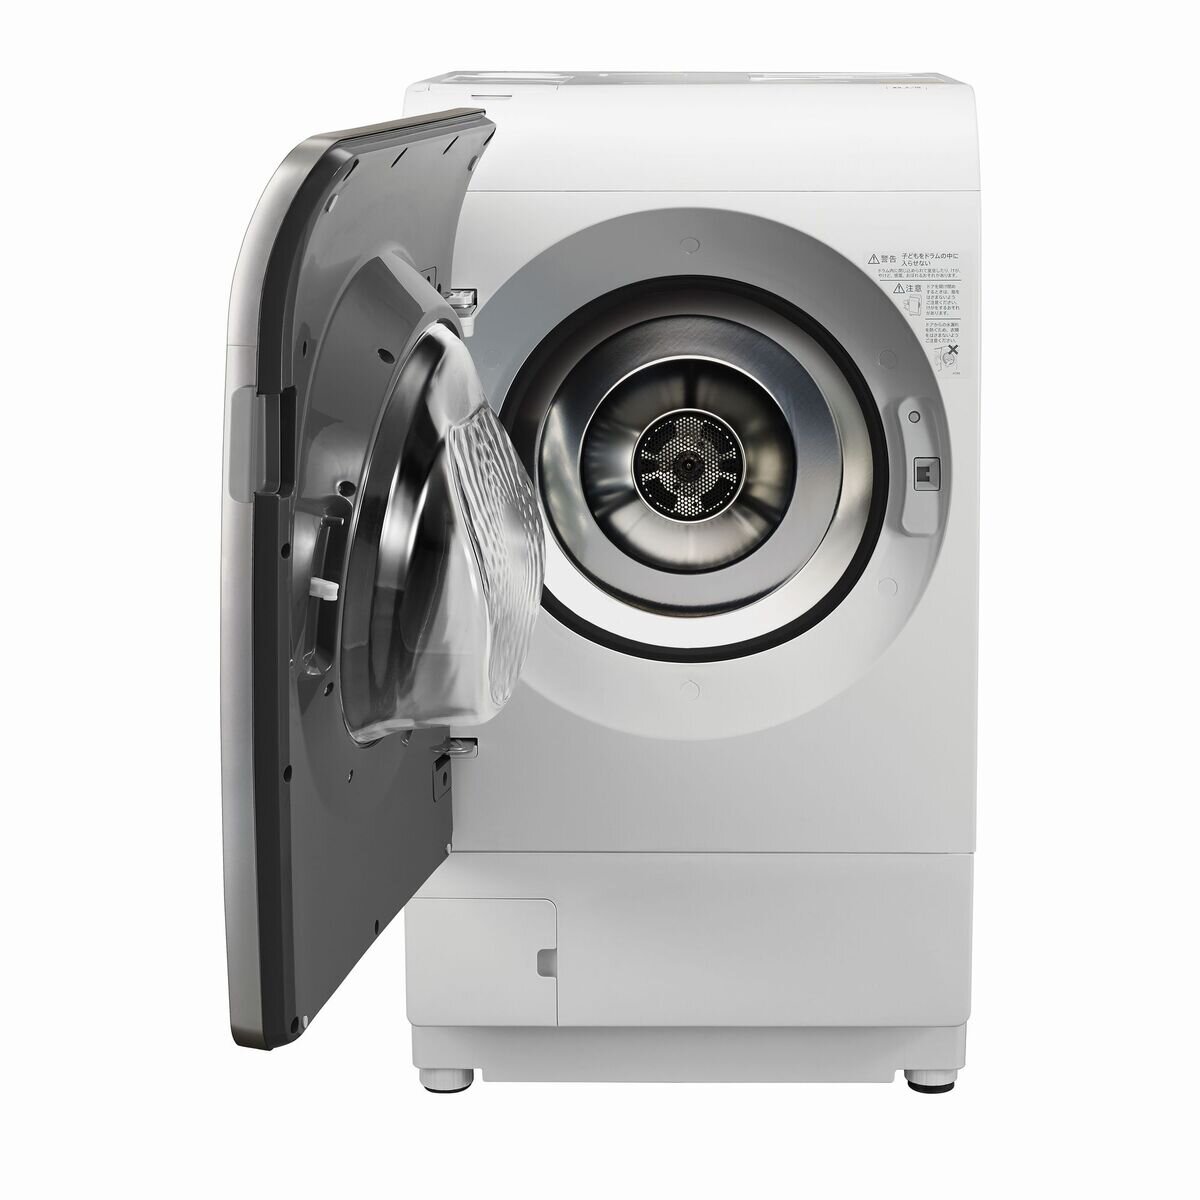 シャープドラム式洗濯乾燥機 洗濯 11kg 乾燥 6kg ES-X11A SL 